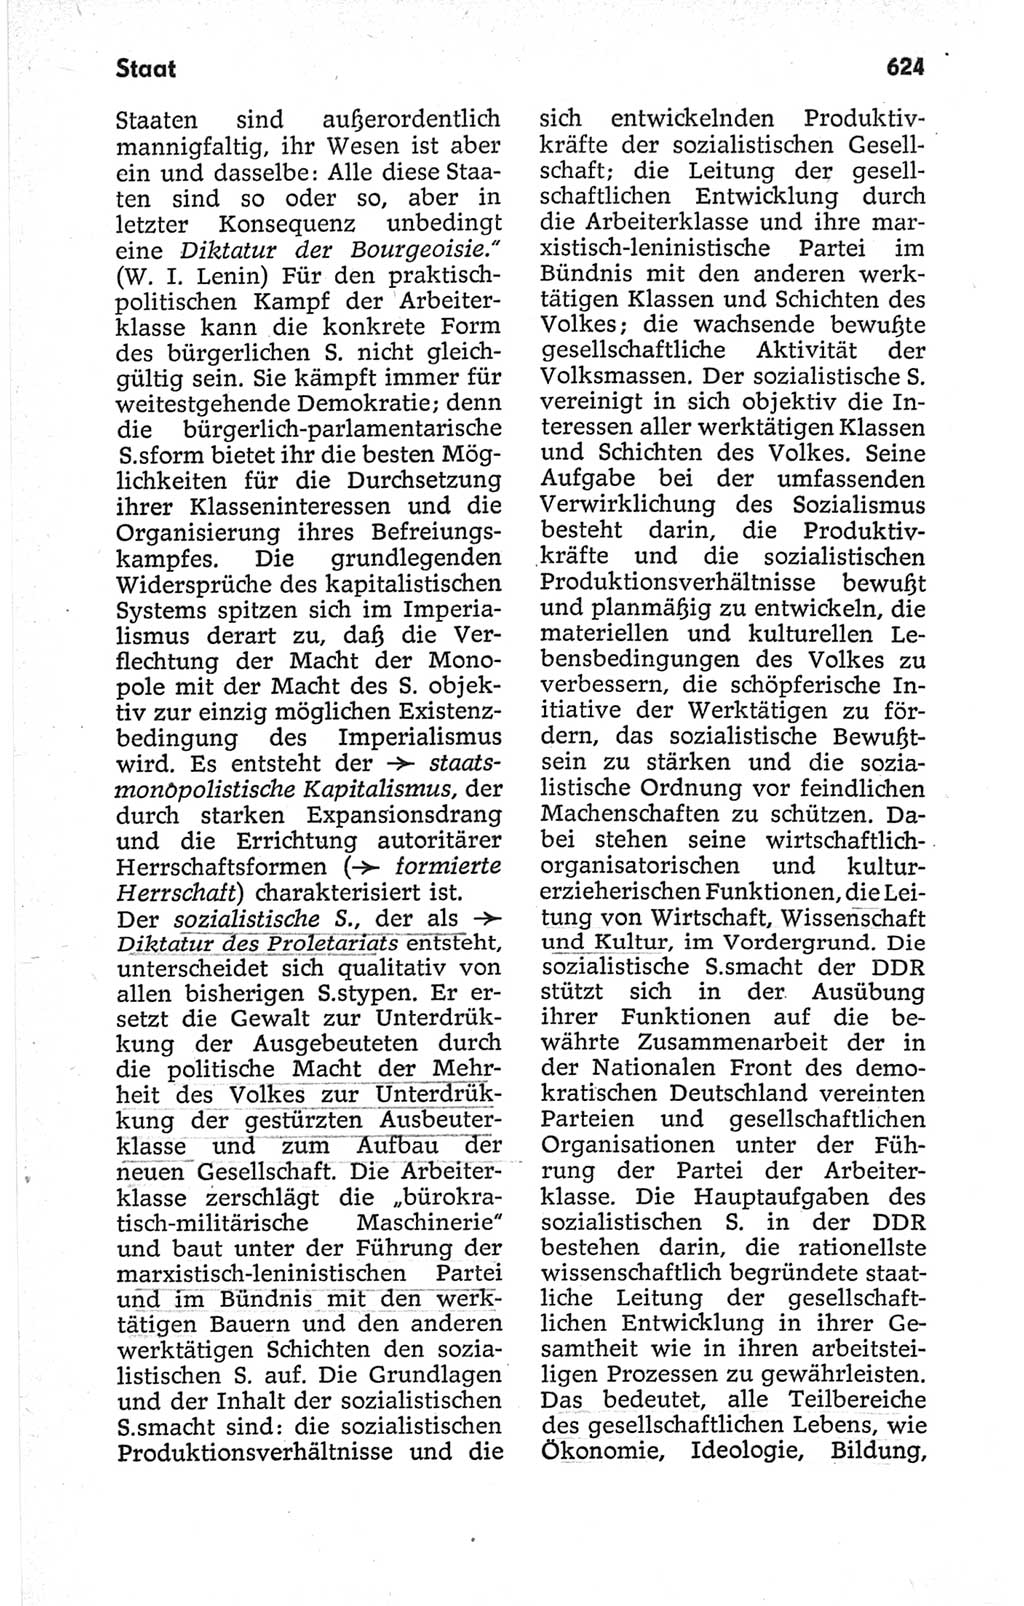 Kleines politisches Wörterbuch [Deutsche Demokratische Republik (DDR)] 1967, Seite 624 (Kl. pol. Wb. DDR 1967, S. 624)